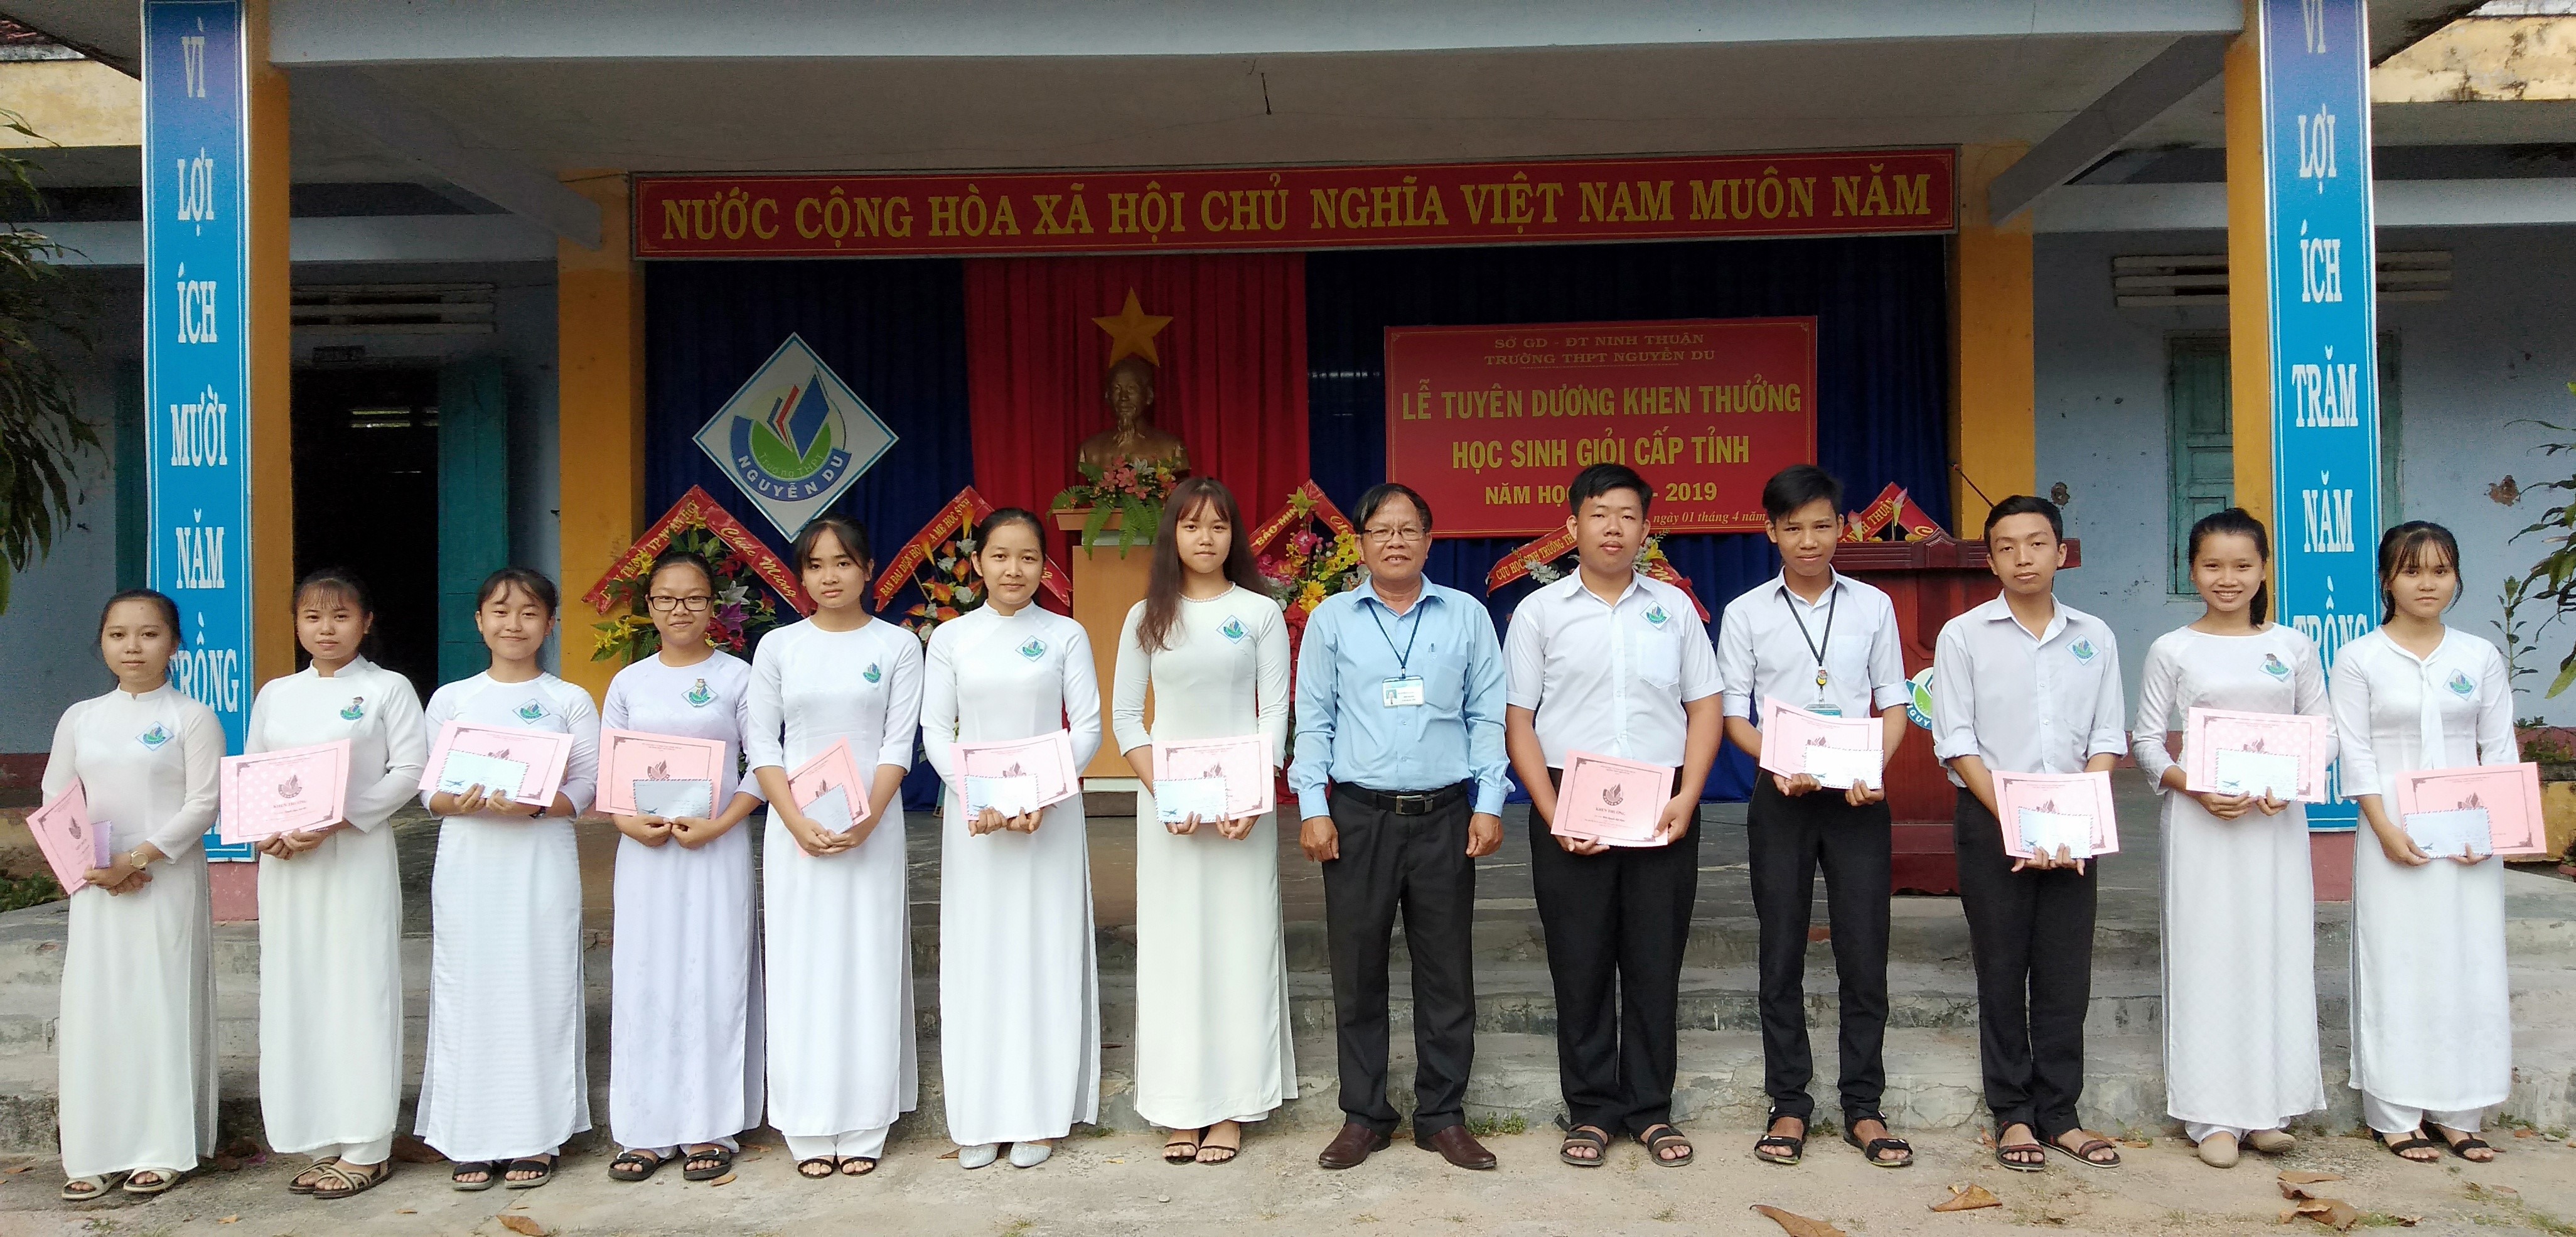 Trường THPT Nguyễn Du có 12  học sinh đạt giải học sinh giỏi cấp tỉnh năm học 2018-2019